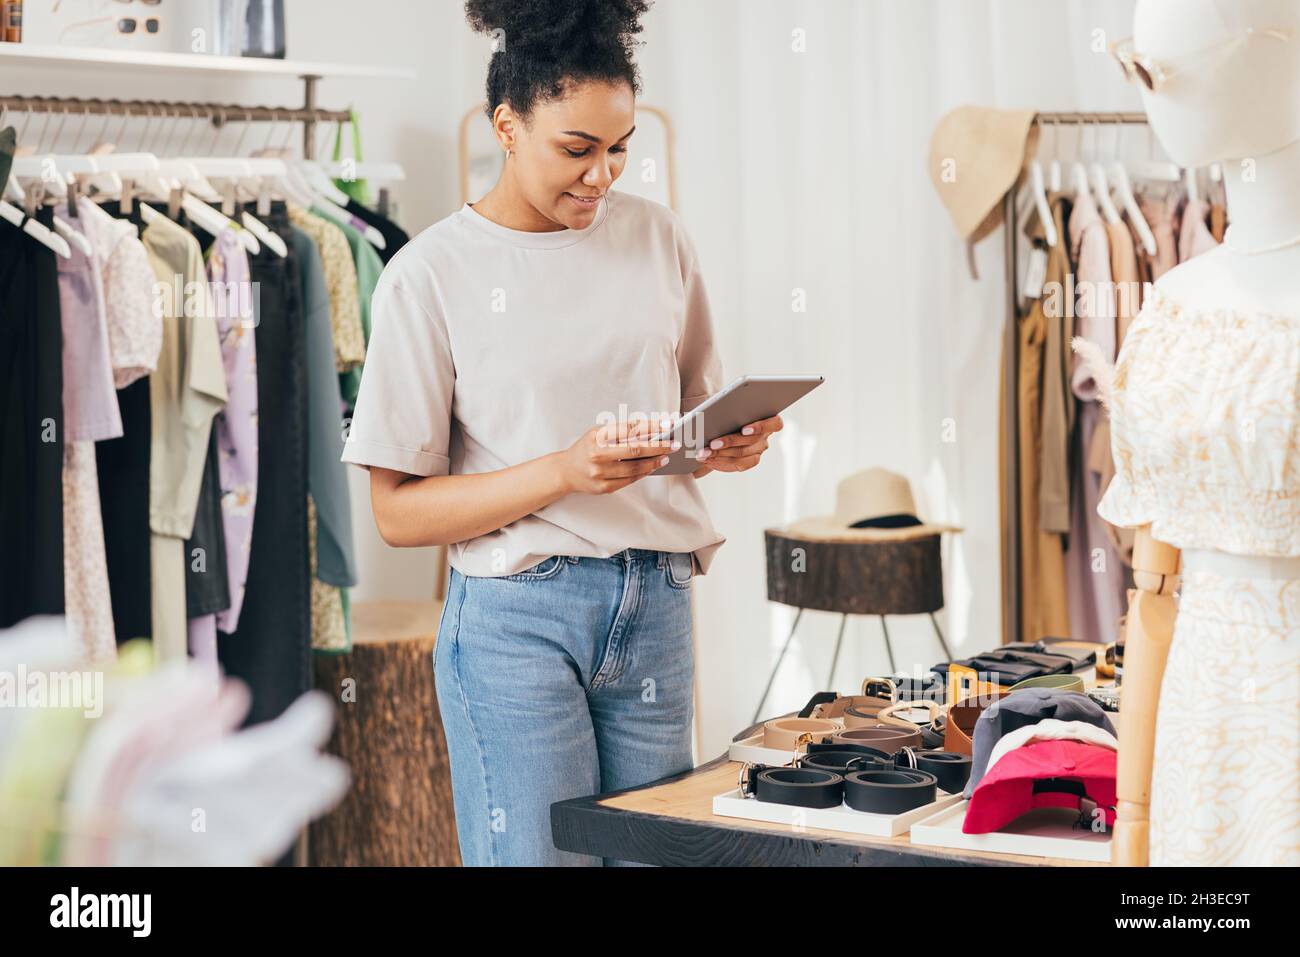 Geschäftsfrau mit digitalem Tablet in einer Boutique. Verkäuferin, die in einem Einzelhandelsgeschäft arbeitet. Stockfoto